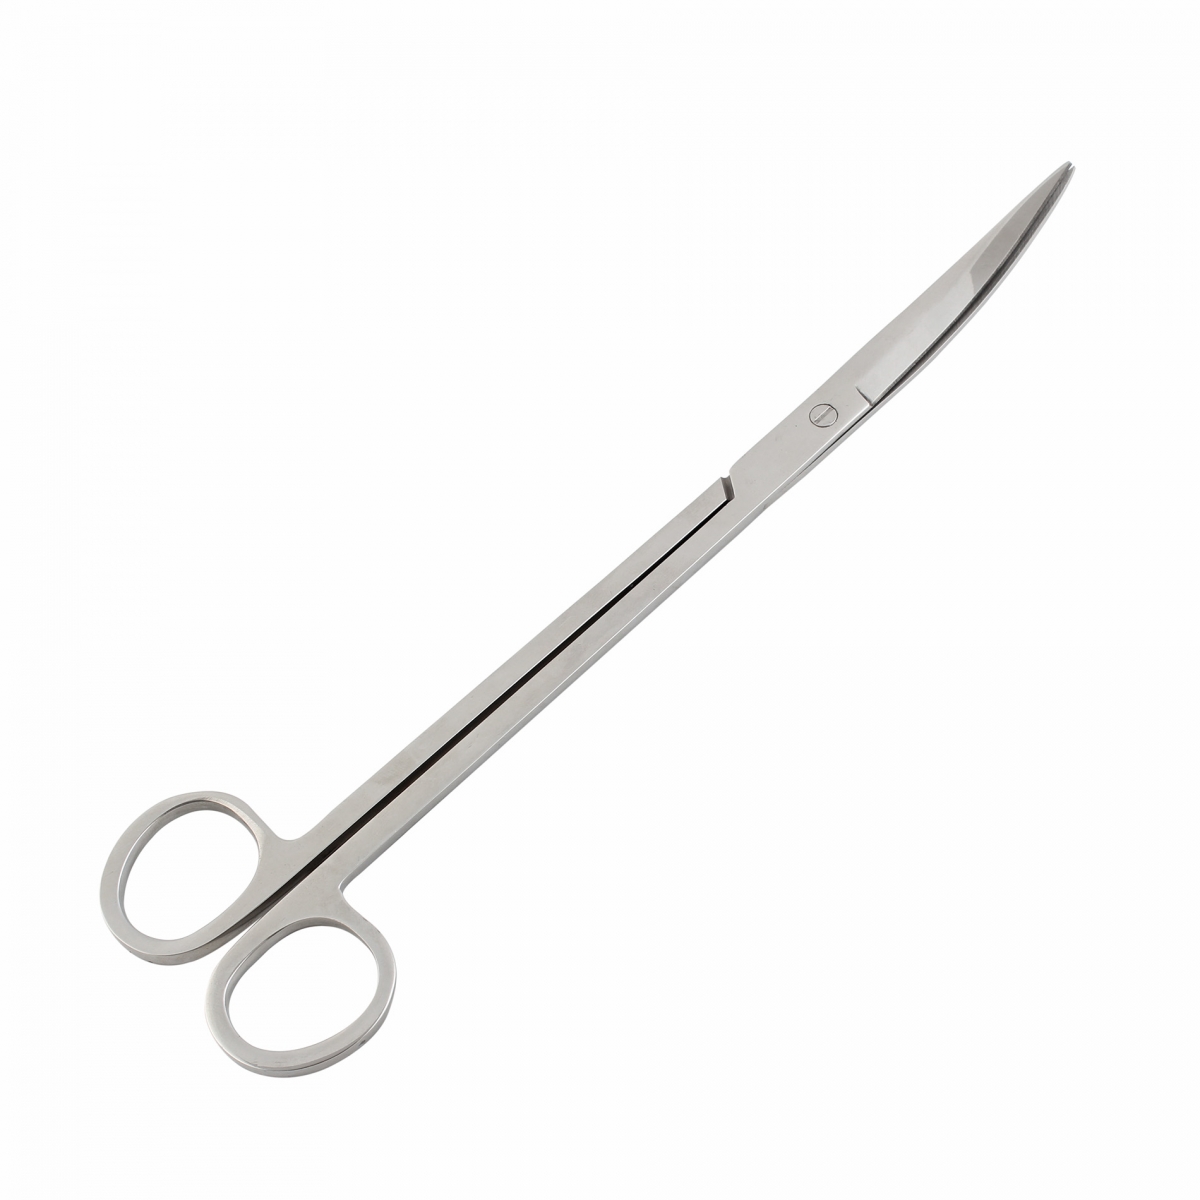 Curved Scissor Shear Tools